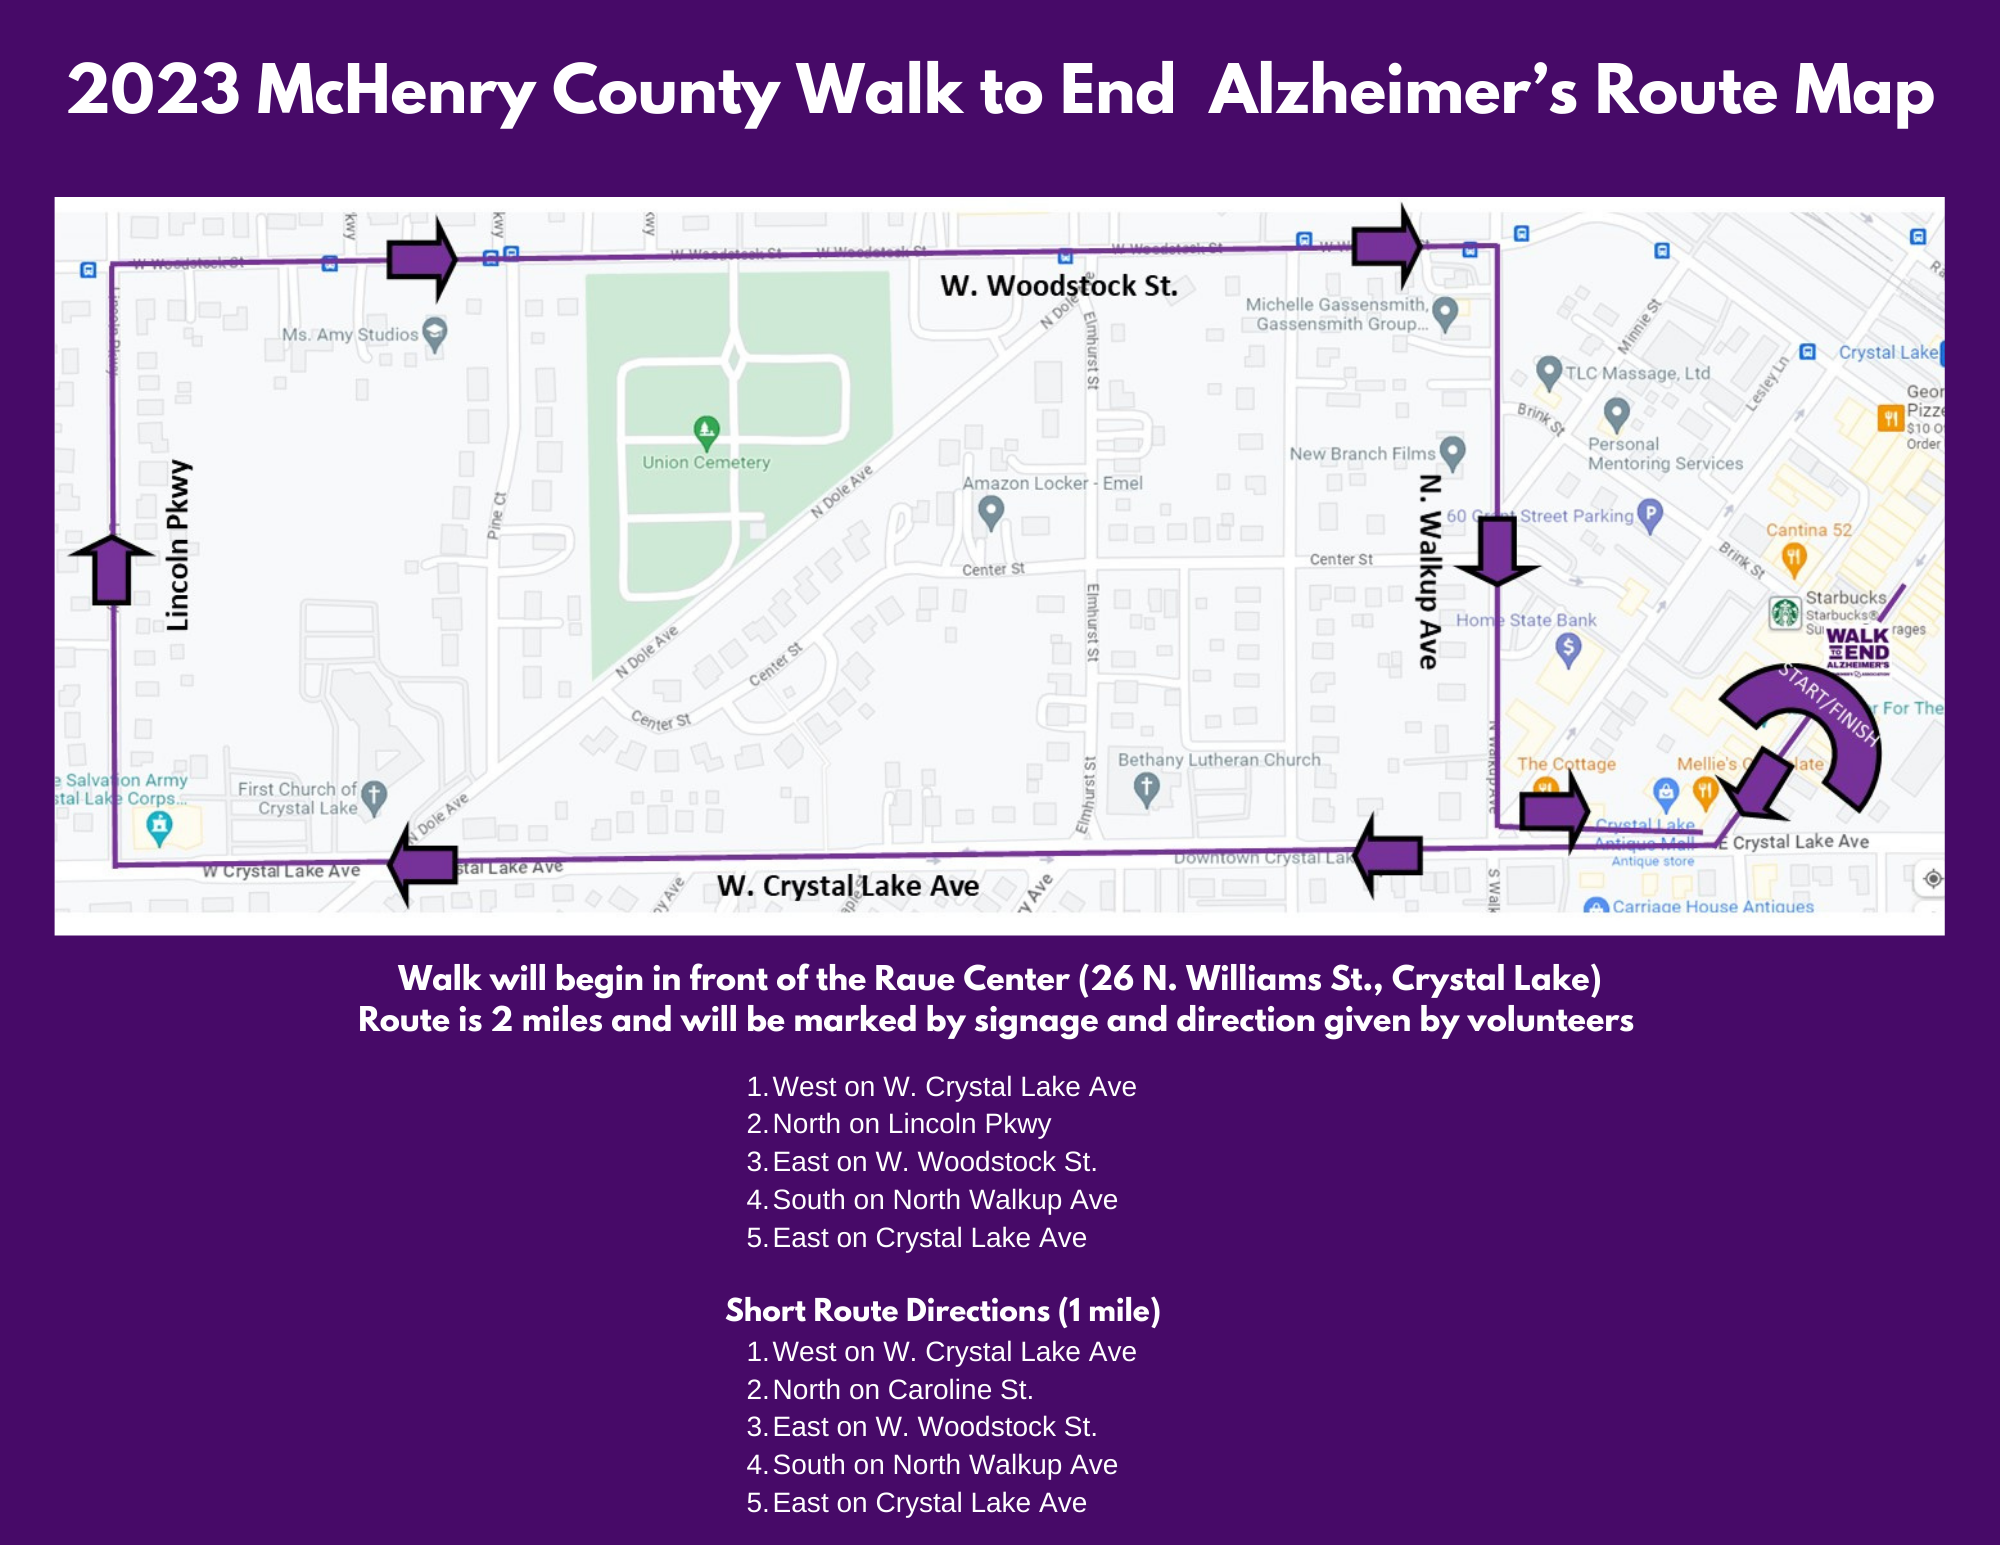 Ruta de la caminata del condado de McHenry 2023 para acabar con el Alzheimer.png